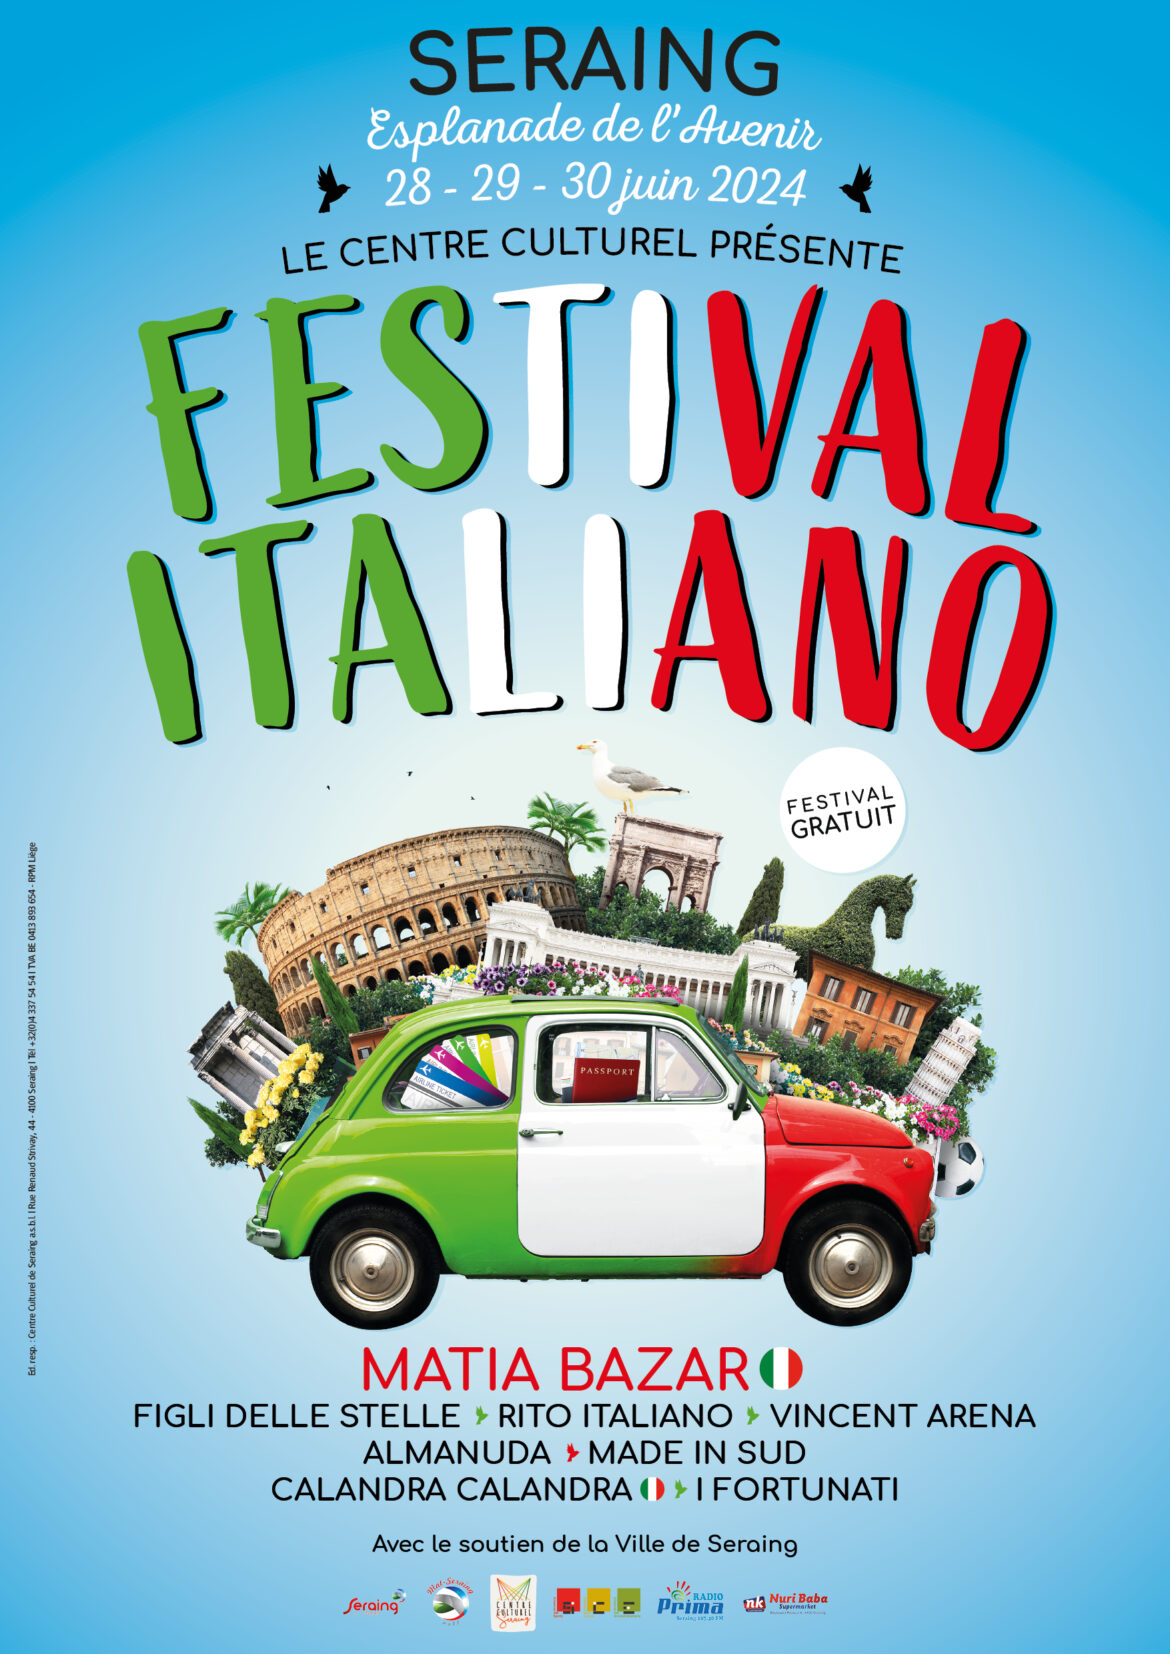 Le Festival Italiano revient le dernier week-end de juin !